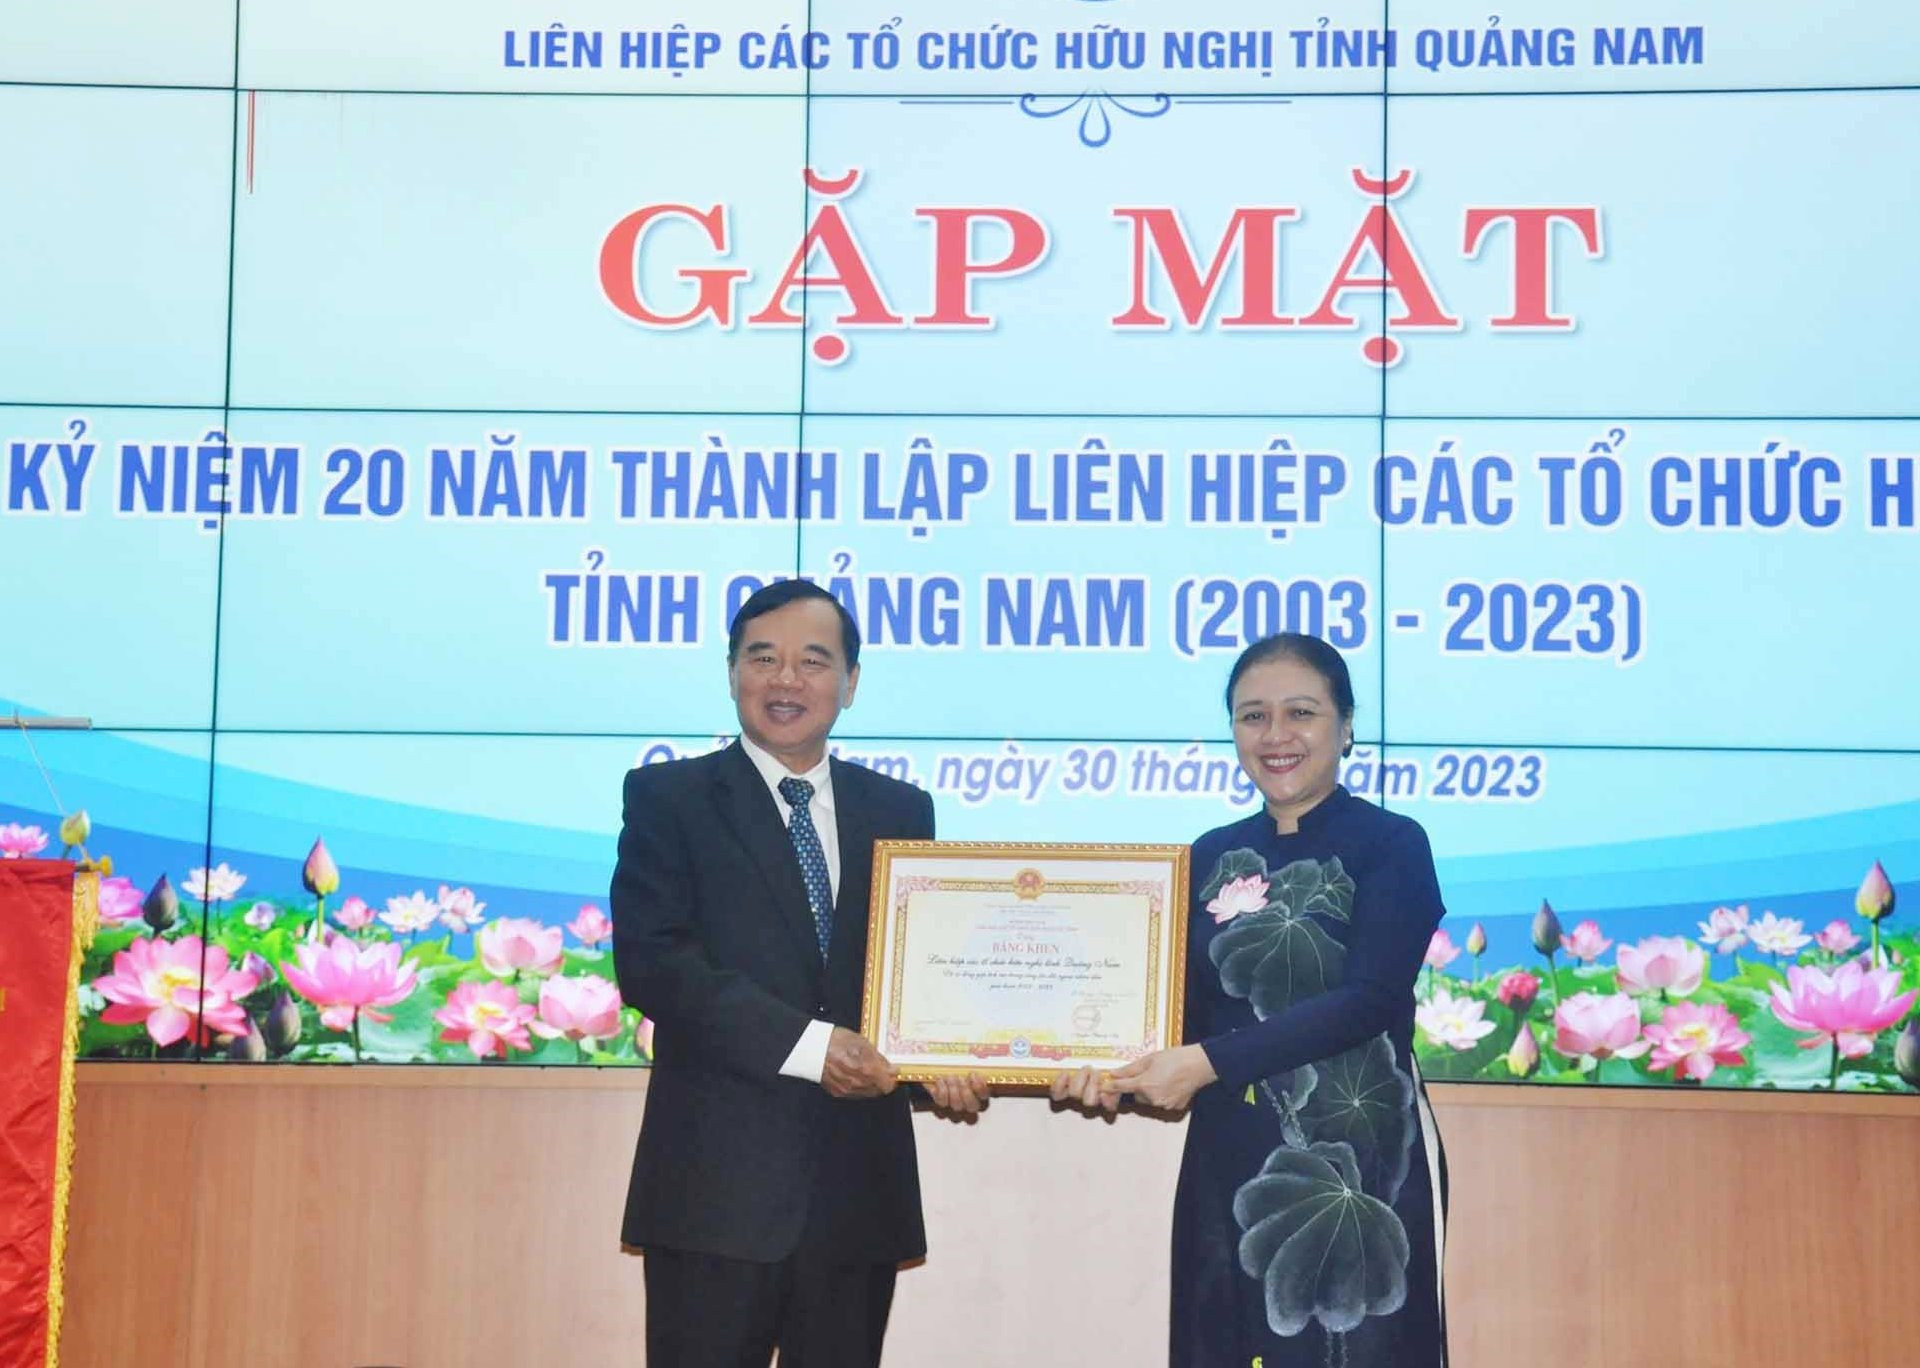 Bà Nguyễn Phương Nga trao tặng Bằng khen của Chủ tịch Liên hiệp Các tổ chức hữu nghị Việt Nam cho Liên hiệp Các tổ chức hữu nghị tỉnh Quảng Nam. Ảnh: N.Đ